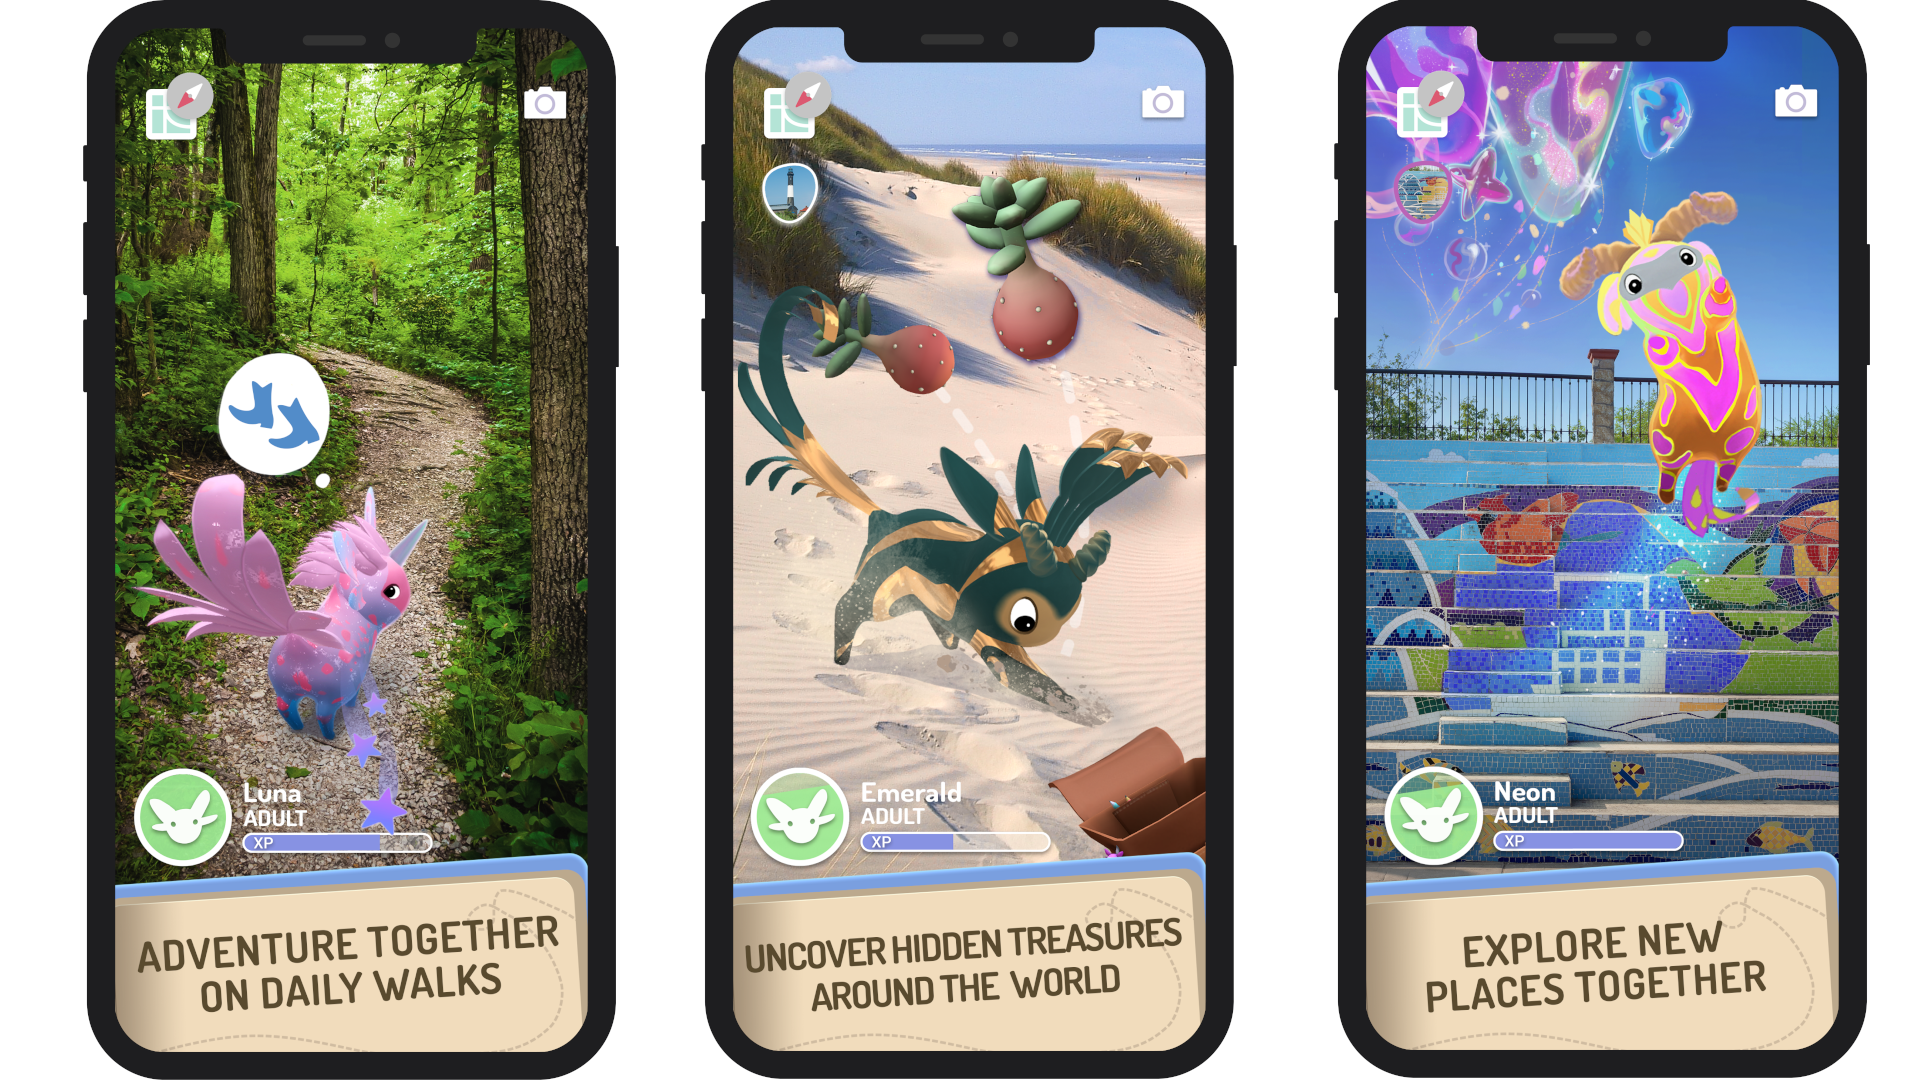 Скриншоты мобильных устройств, показывающие действия игроков с перидотами, включая ежедневные прогулки, поиск сокровищ и исследование новых локаций.